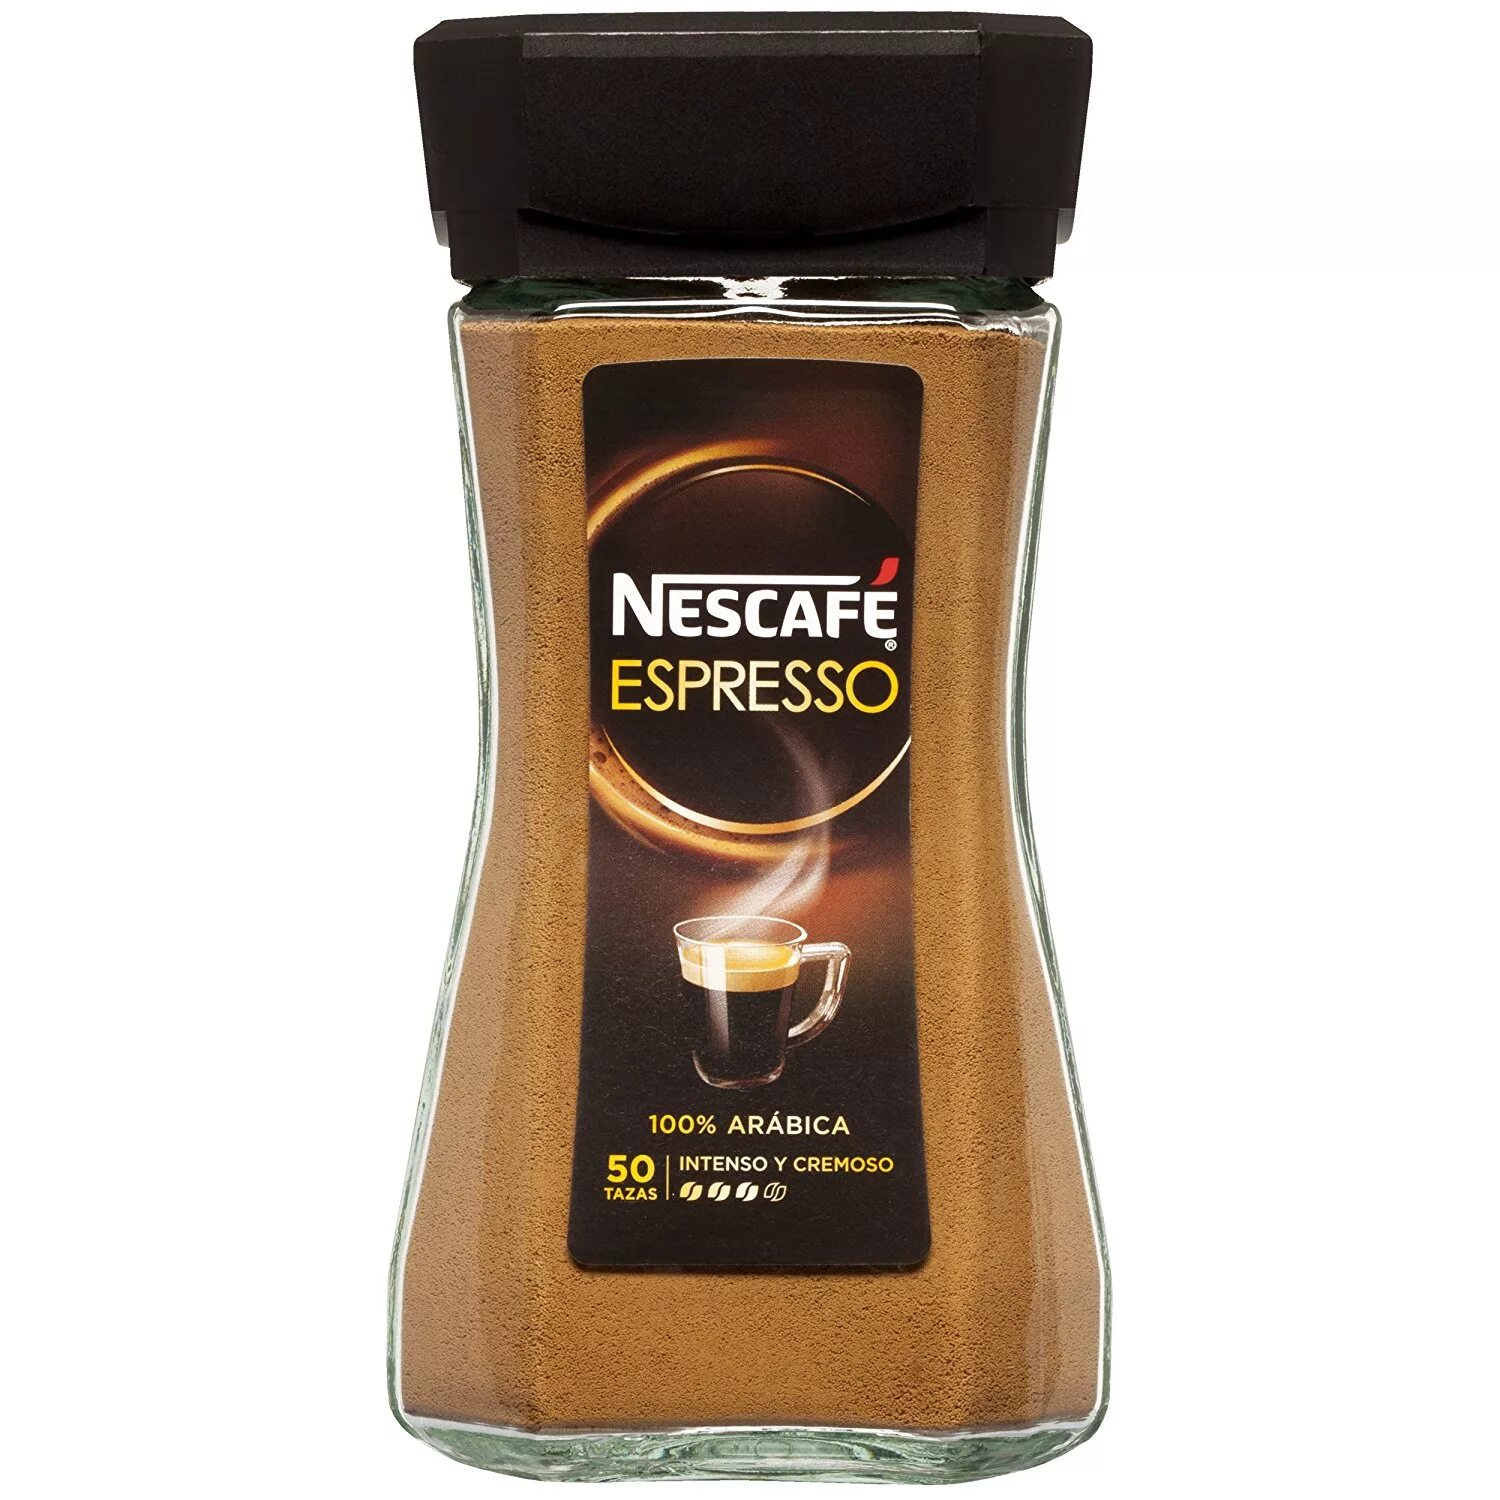 Эспрессо растворимый. Кофе Нескафе эспрессо. Кофе Нескафе эспрессо растворимый. Nescafe Espresso растворимый. Кофе Нескафе эспрессо капучино.